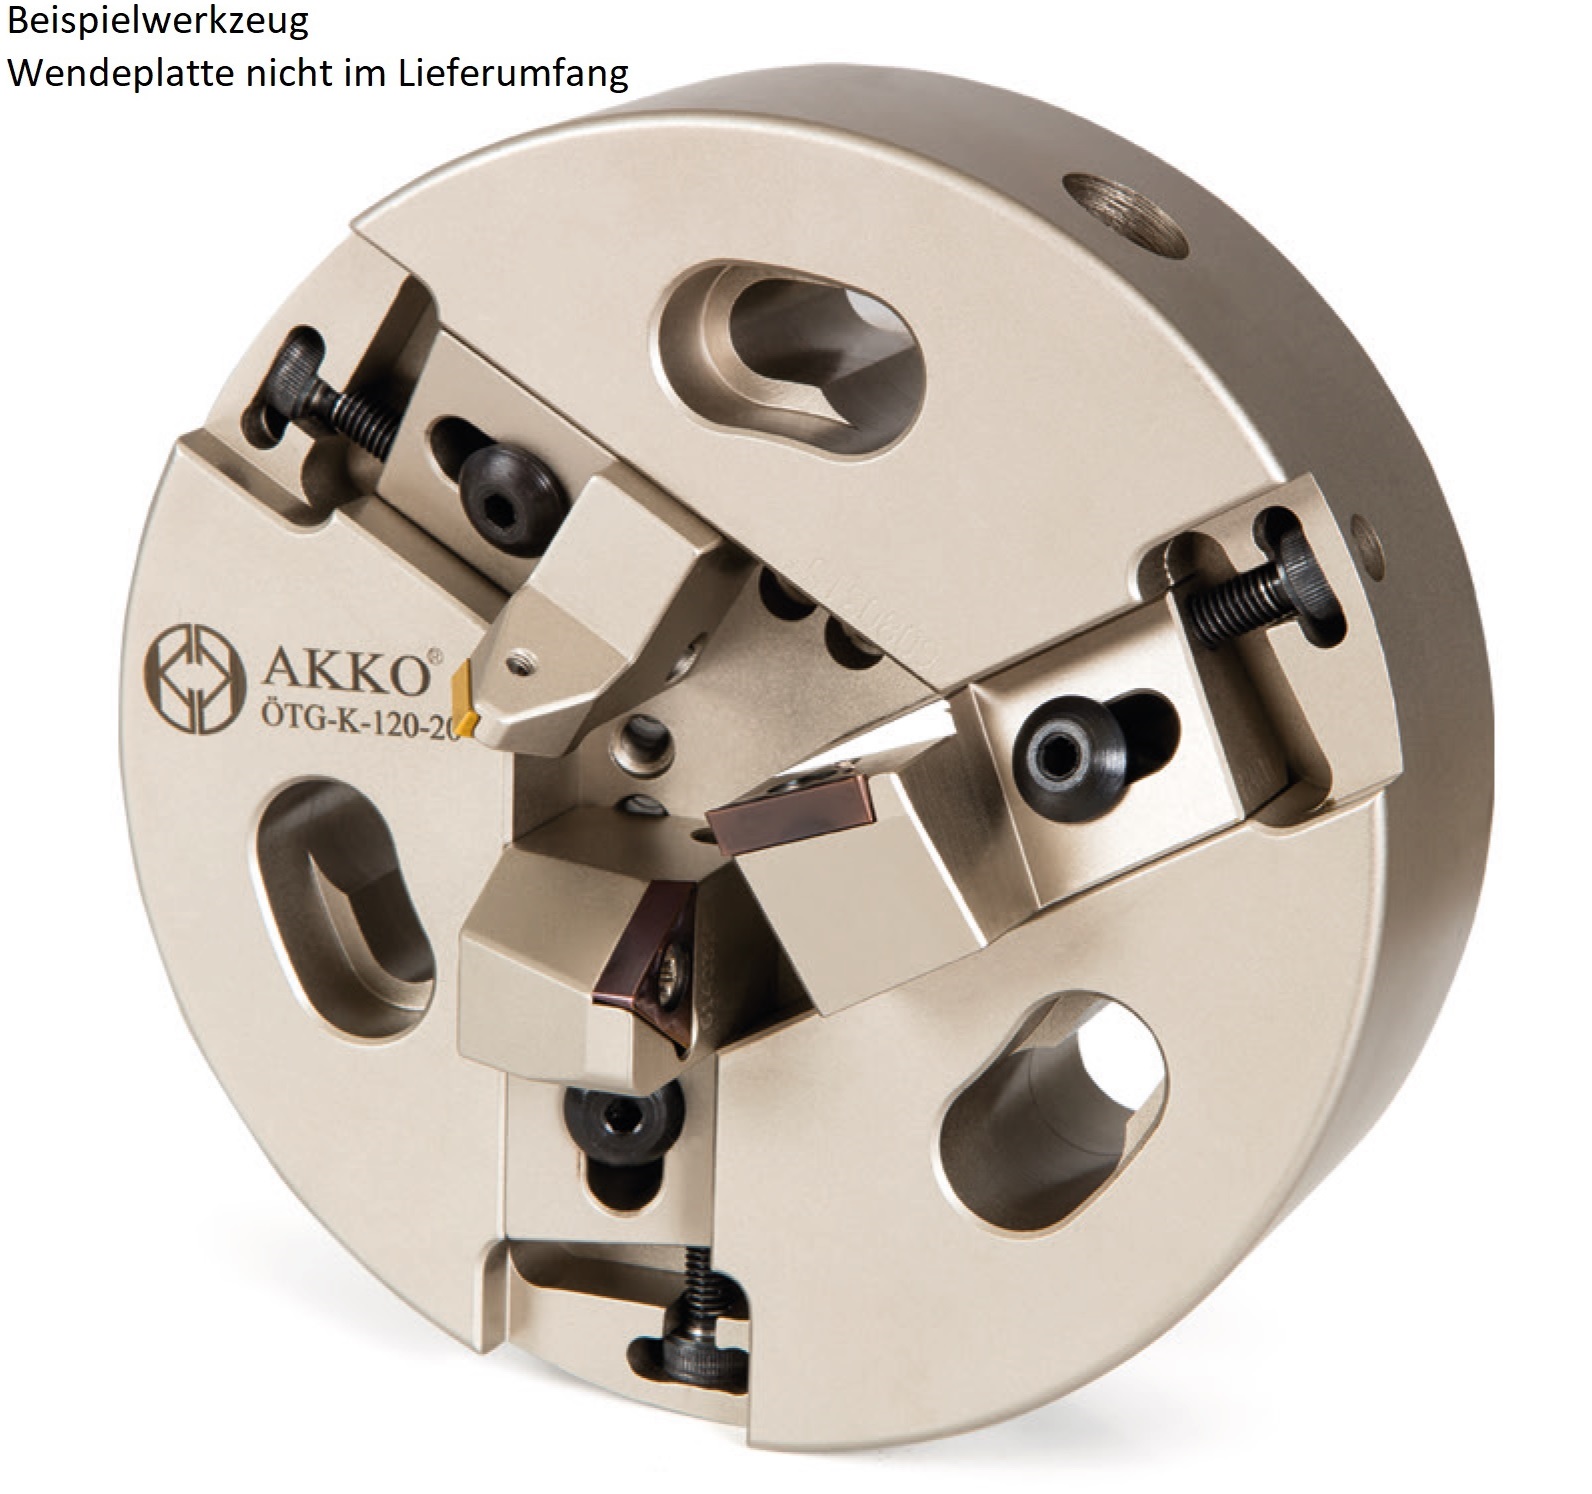 AKKO-Rohrenden-Anfaswerkzeug Dmax 15-35 mm, Dmin 15 mm, kompatibel mit ISO-Wendeplatte TC.. 1102.. und TC.. 16T3..
